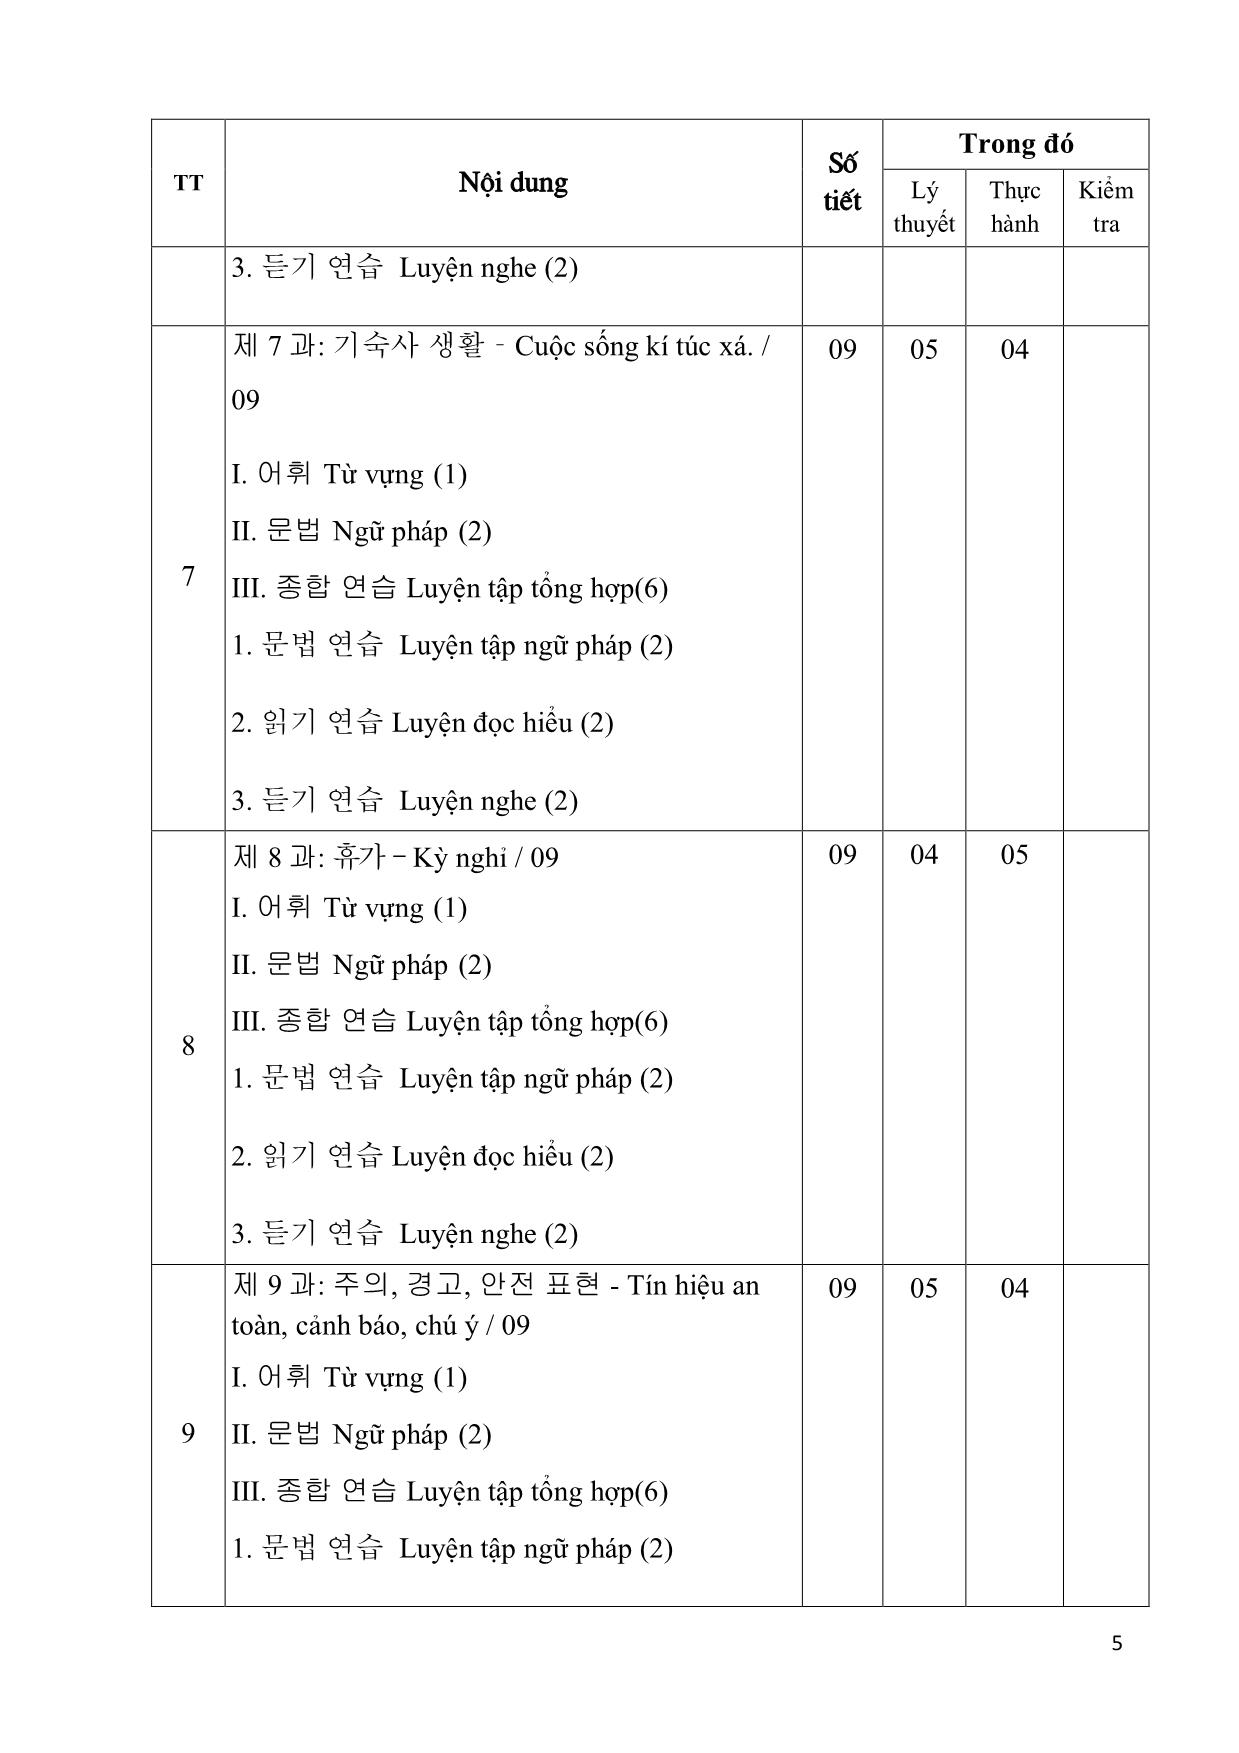 Giáo trình Chương trình tiếng Hàn dùng trong sản xuất chế tạo trang 5